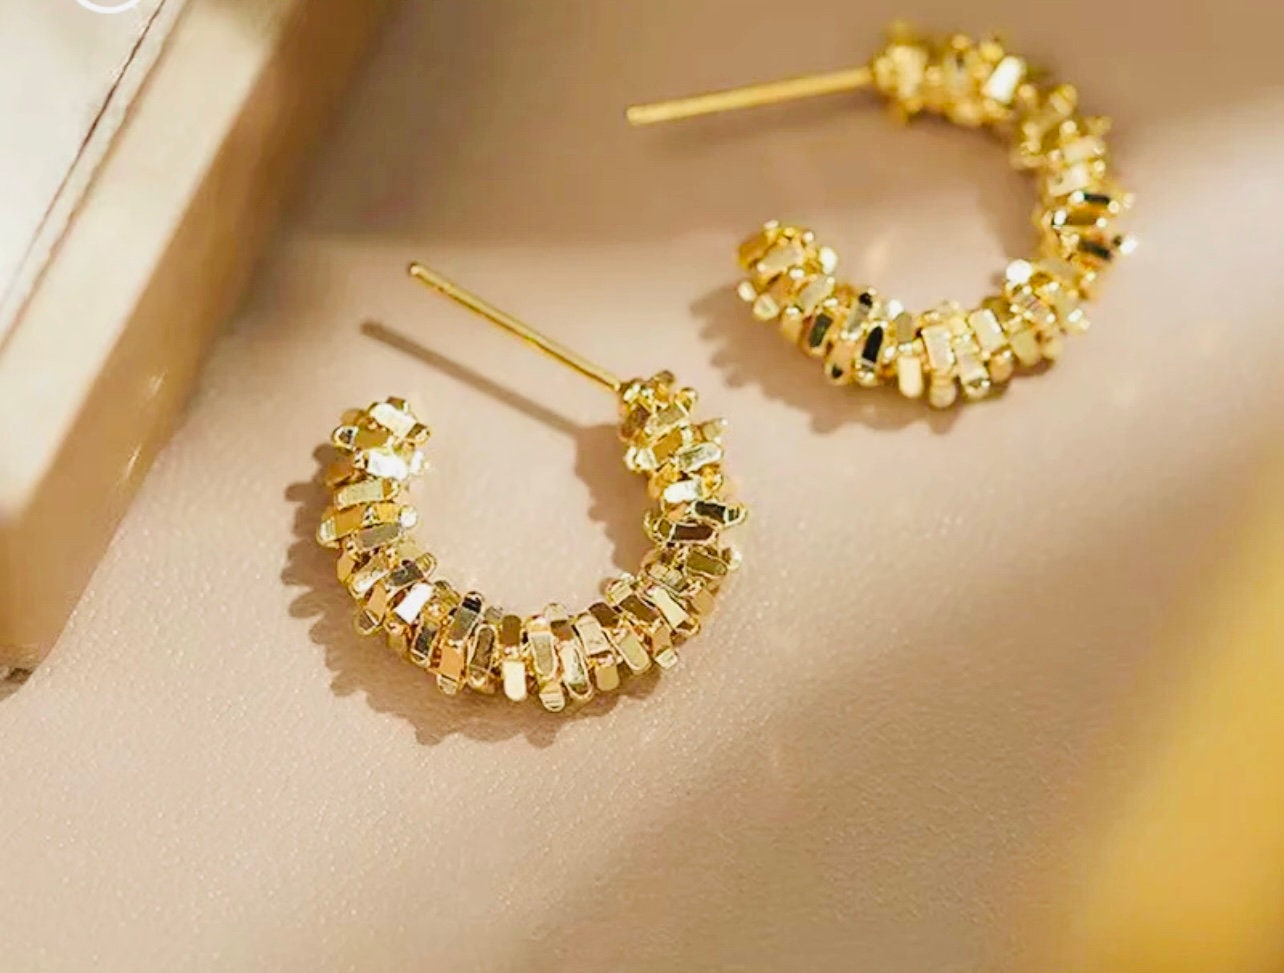 Vintage 18K Gold Plated Patterned Earrings Huggie Hoop Earrings by Grathia Cero